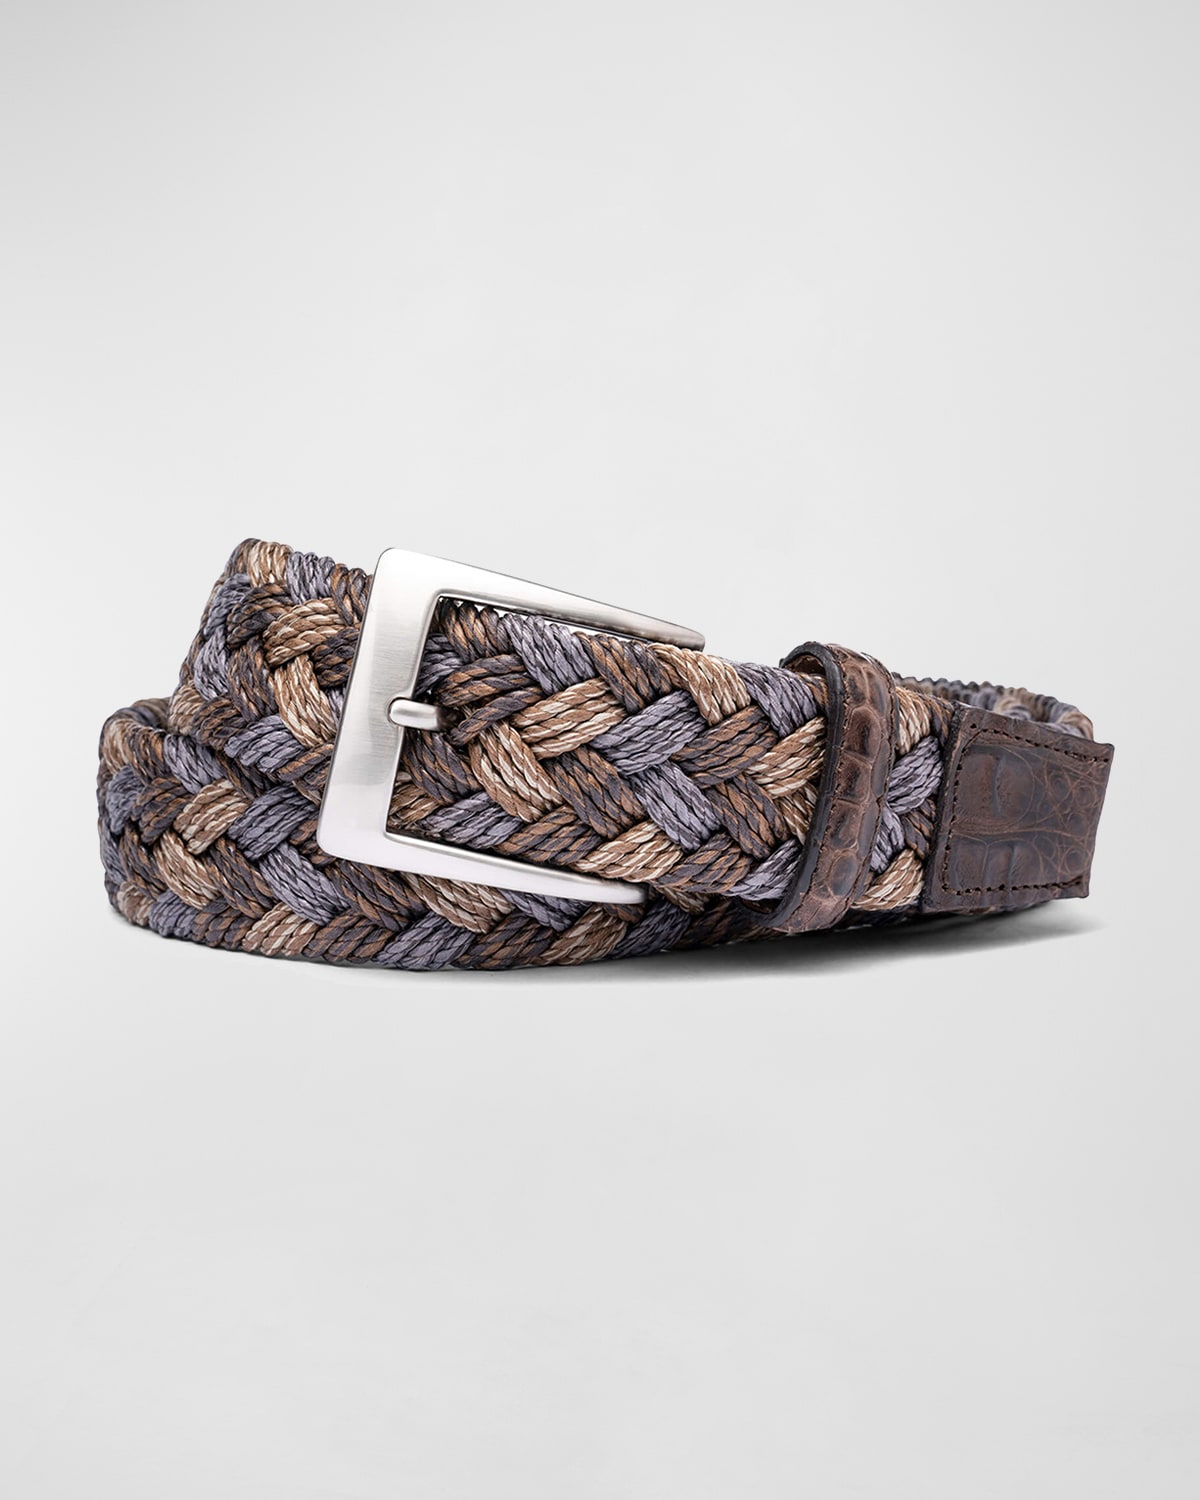 W. Kleinberg Men's Woven Linen Belt W/ Croc Tabs In Tan, Grey, Brown